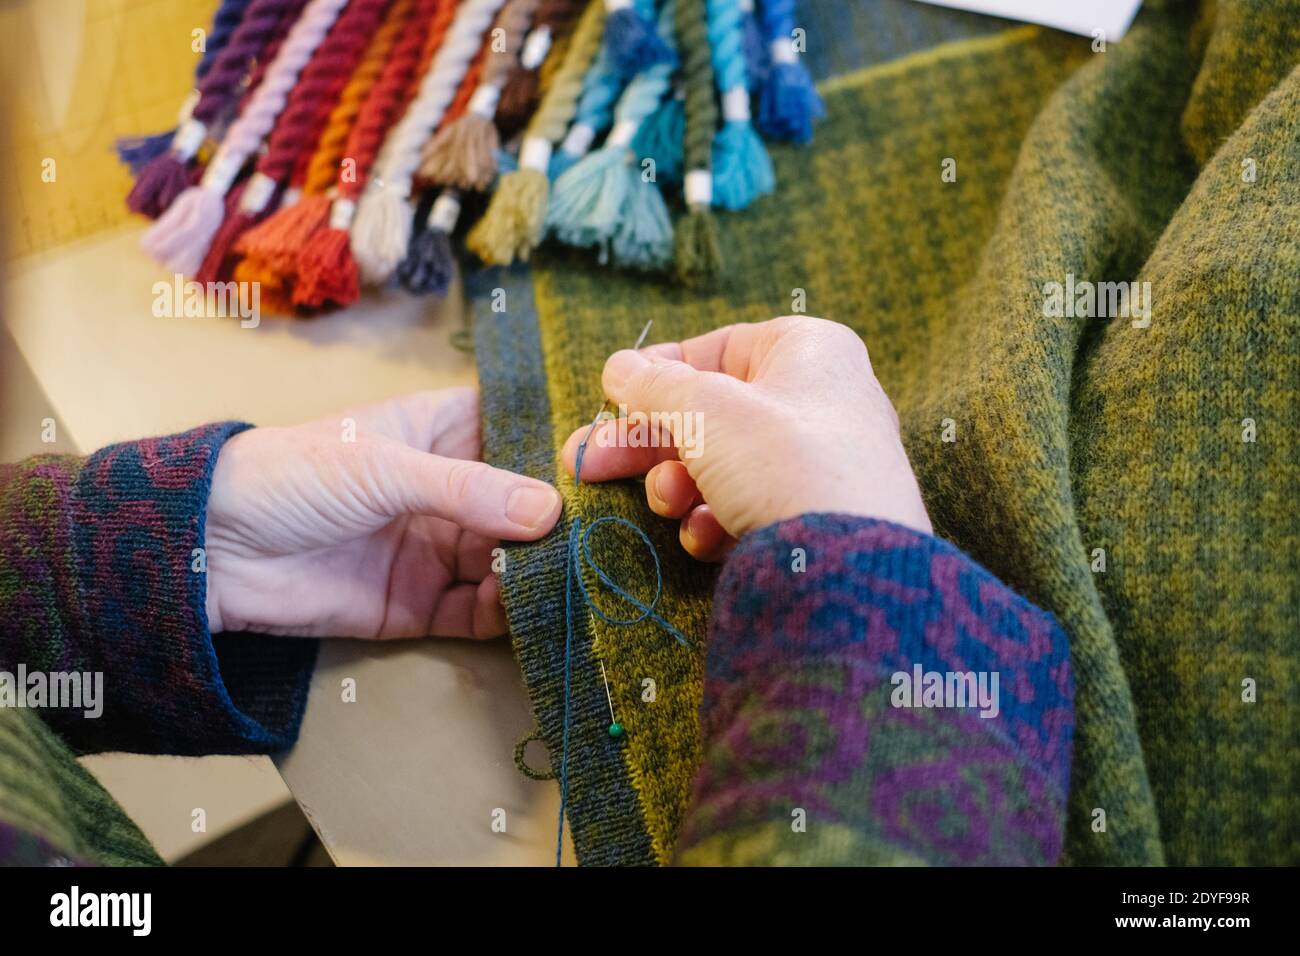 Hanover, Alemania. 16 de diciembre de 2020. La diseñadora de textiles Anne-Susanne Gueler se queda con una chaqueta de punto en su taller 'hand-werk'. (A dpa 'Noticias de ayer: Tejer está de moda') crédito: OLE Spata/dpa/Alamy Live News Foto de stock